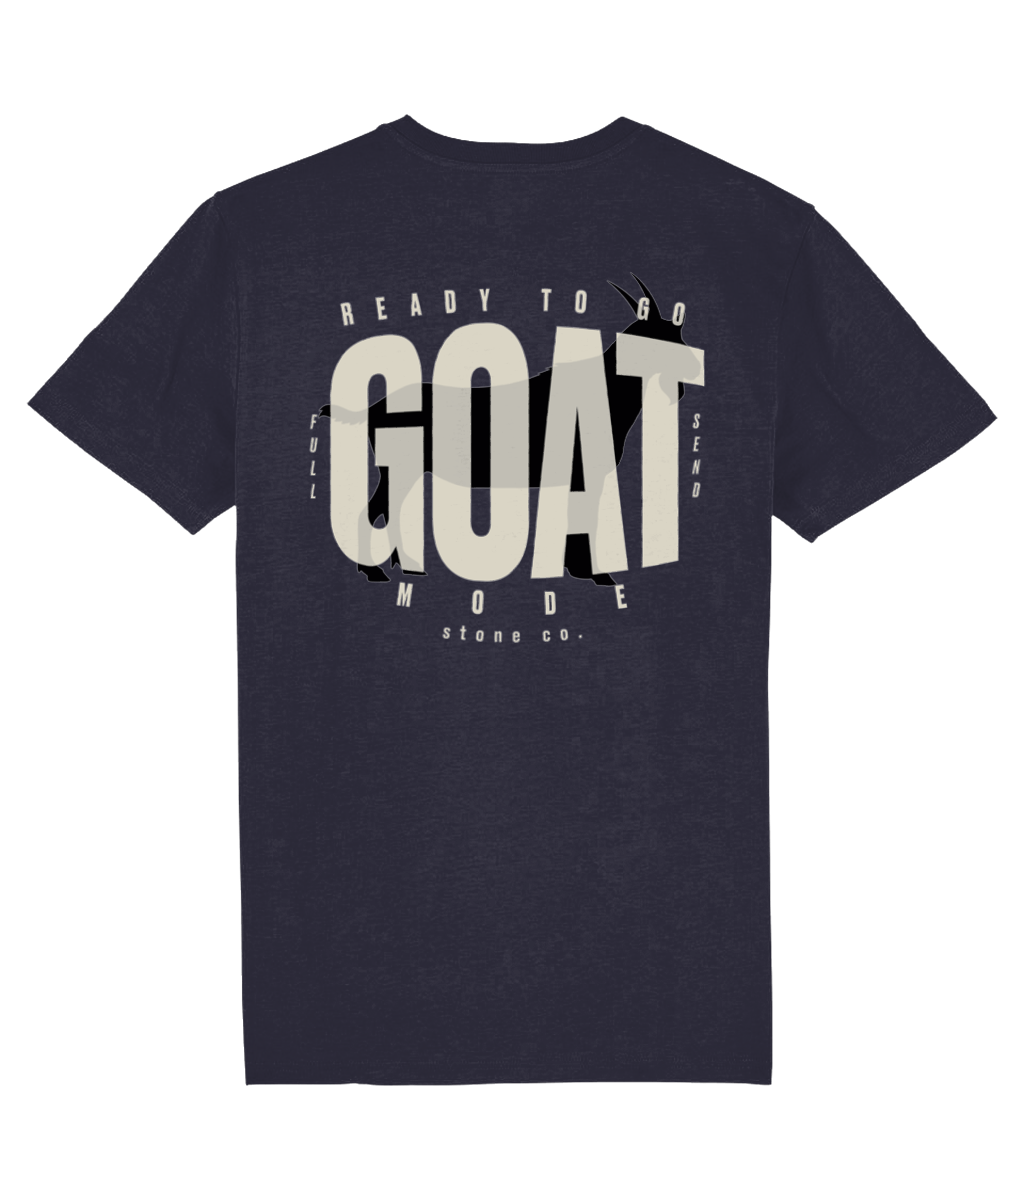 Goat mode (subtle) t-shirt